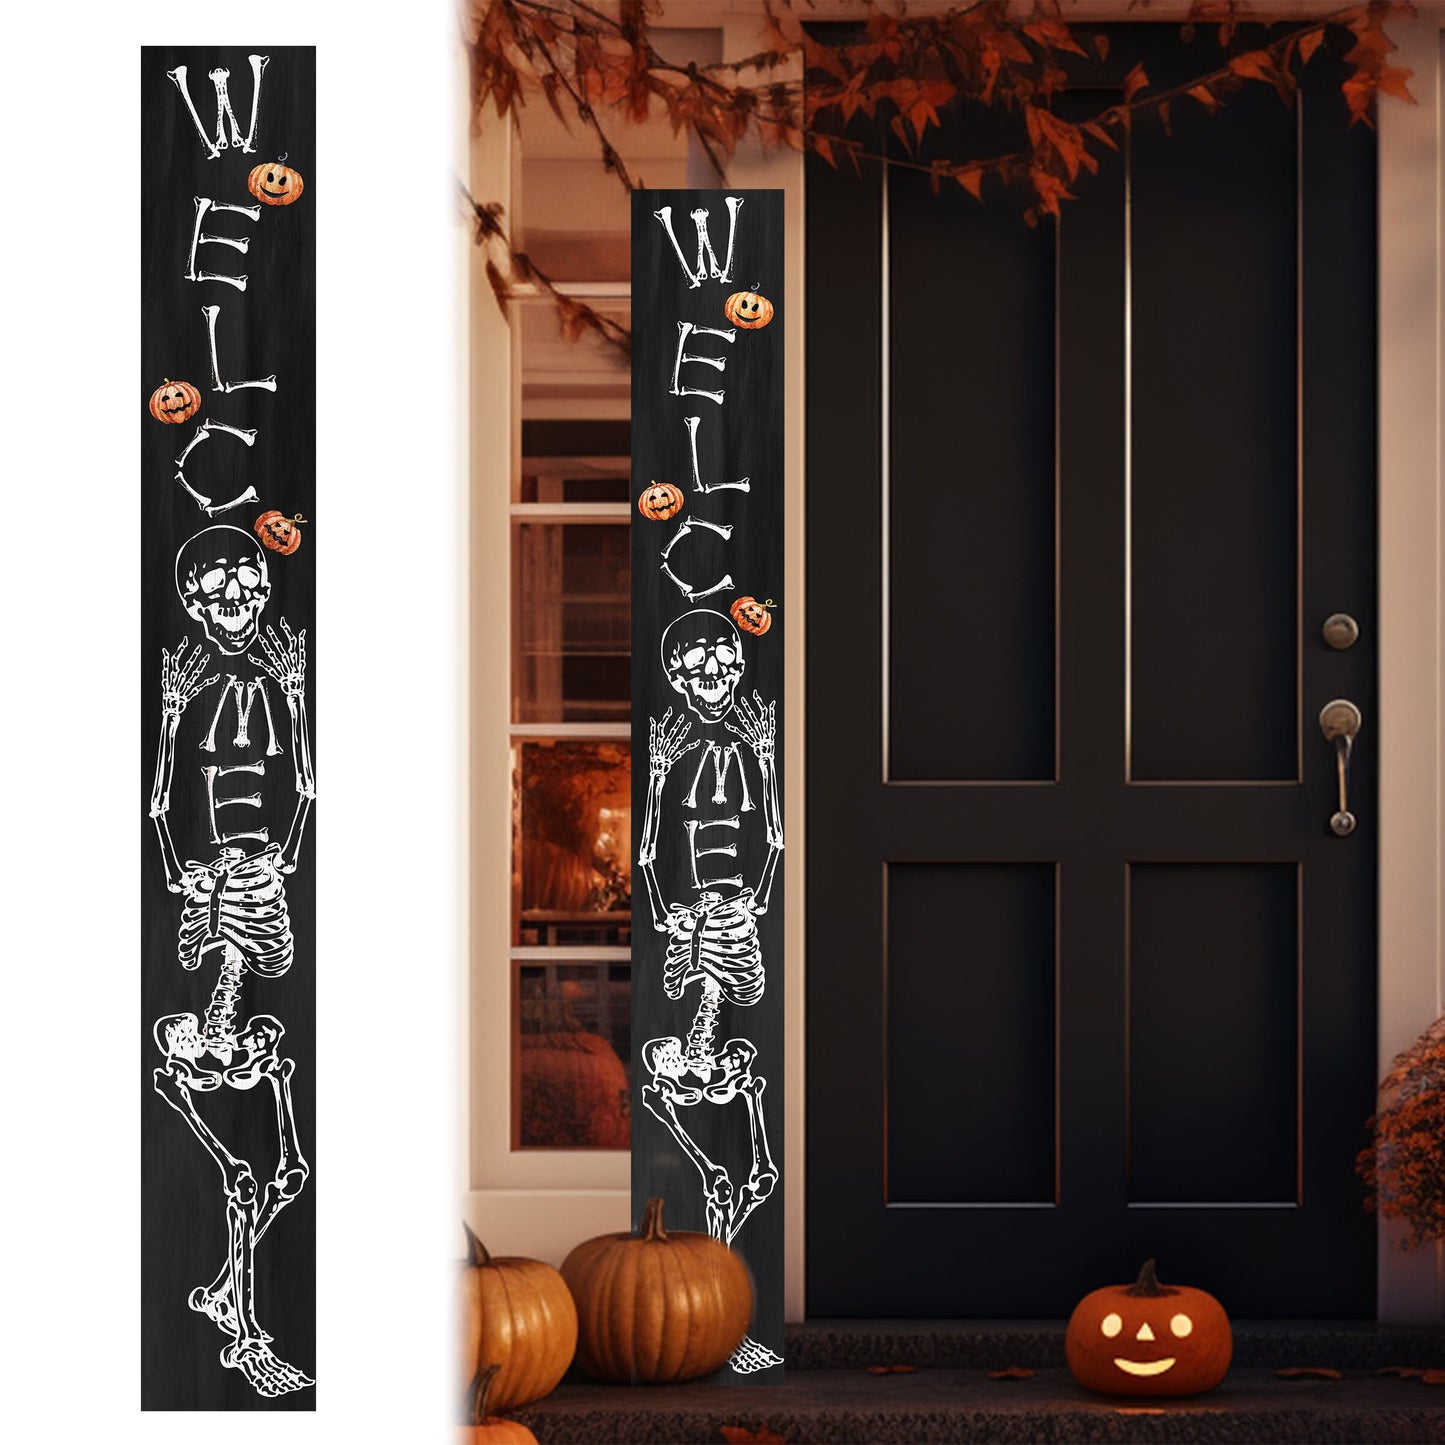 72in Wooden Halloween Skeleton Welcome Sign - Spooky Front Door Decor for Seasonal Celebrations